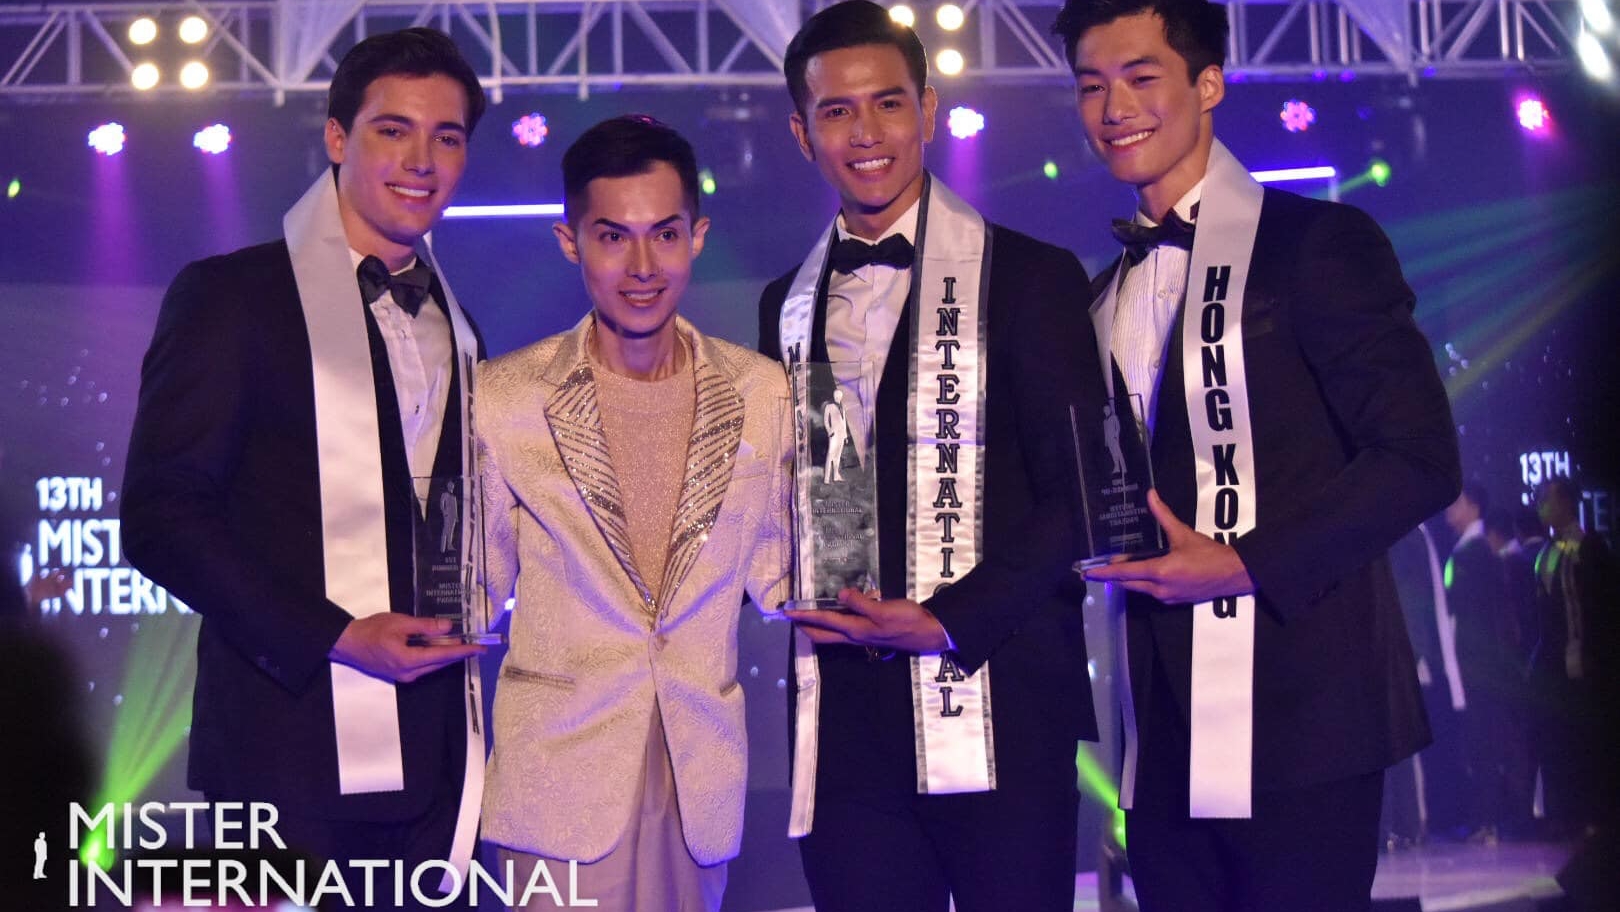 Mister International Top 3 Winners from Venezuela Vietnam and Hong Kong